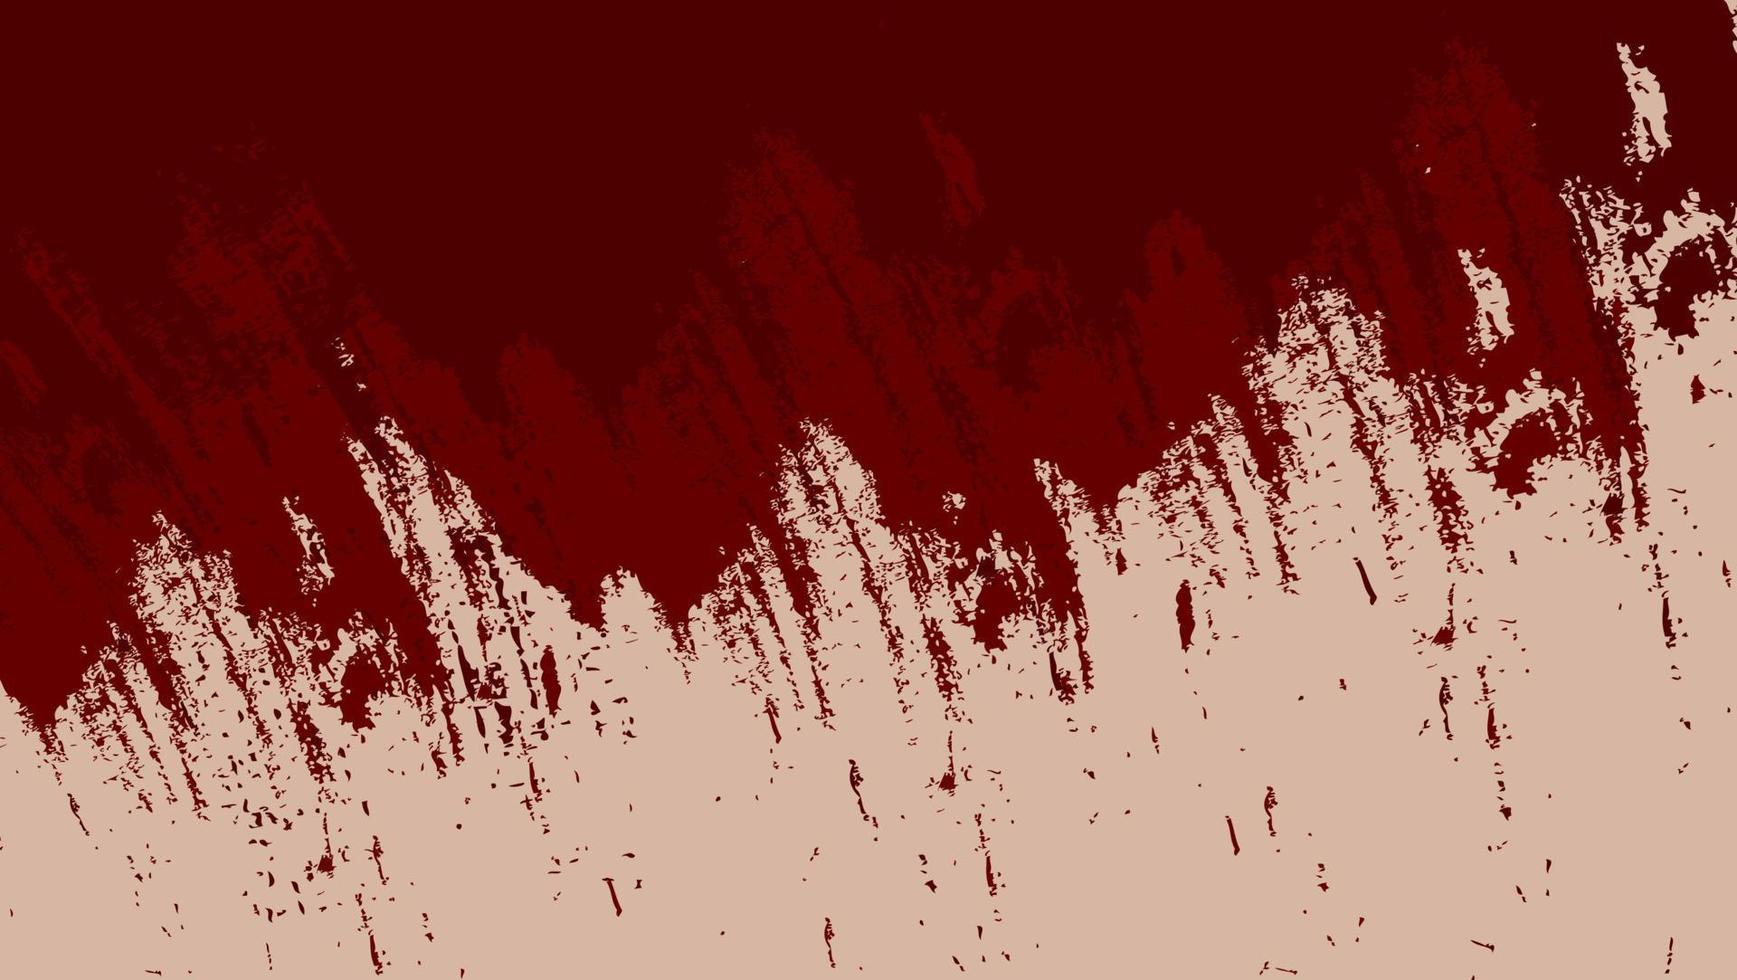 minimo astratto sfondo rosso scuro della vernice del grunge vettore